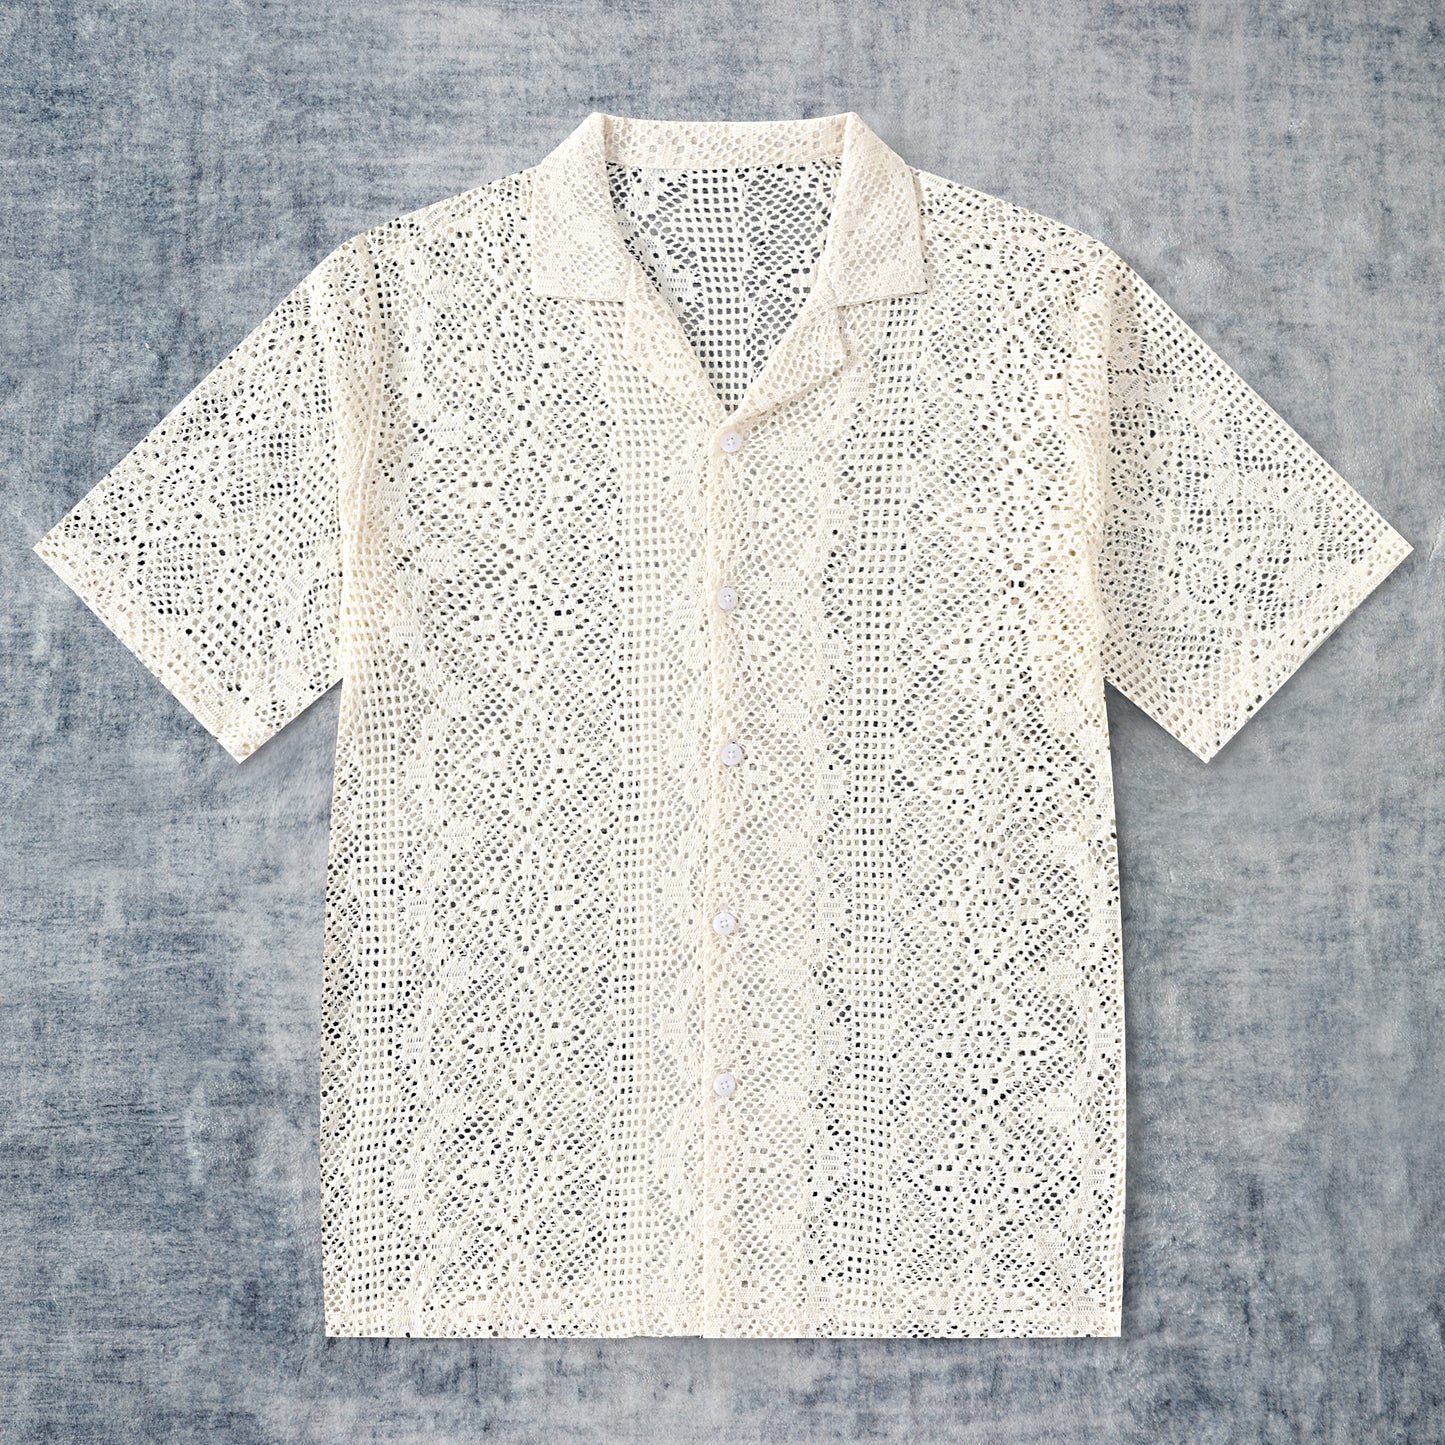 Floral Lace Vintage Crochet Camp Collar Shirt